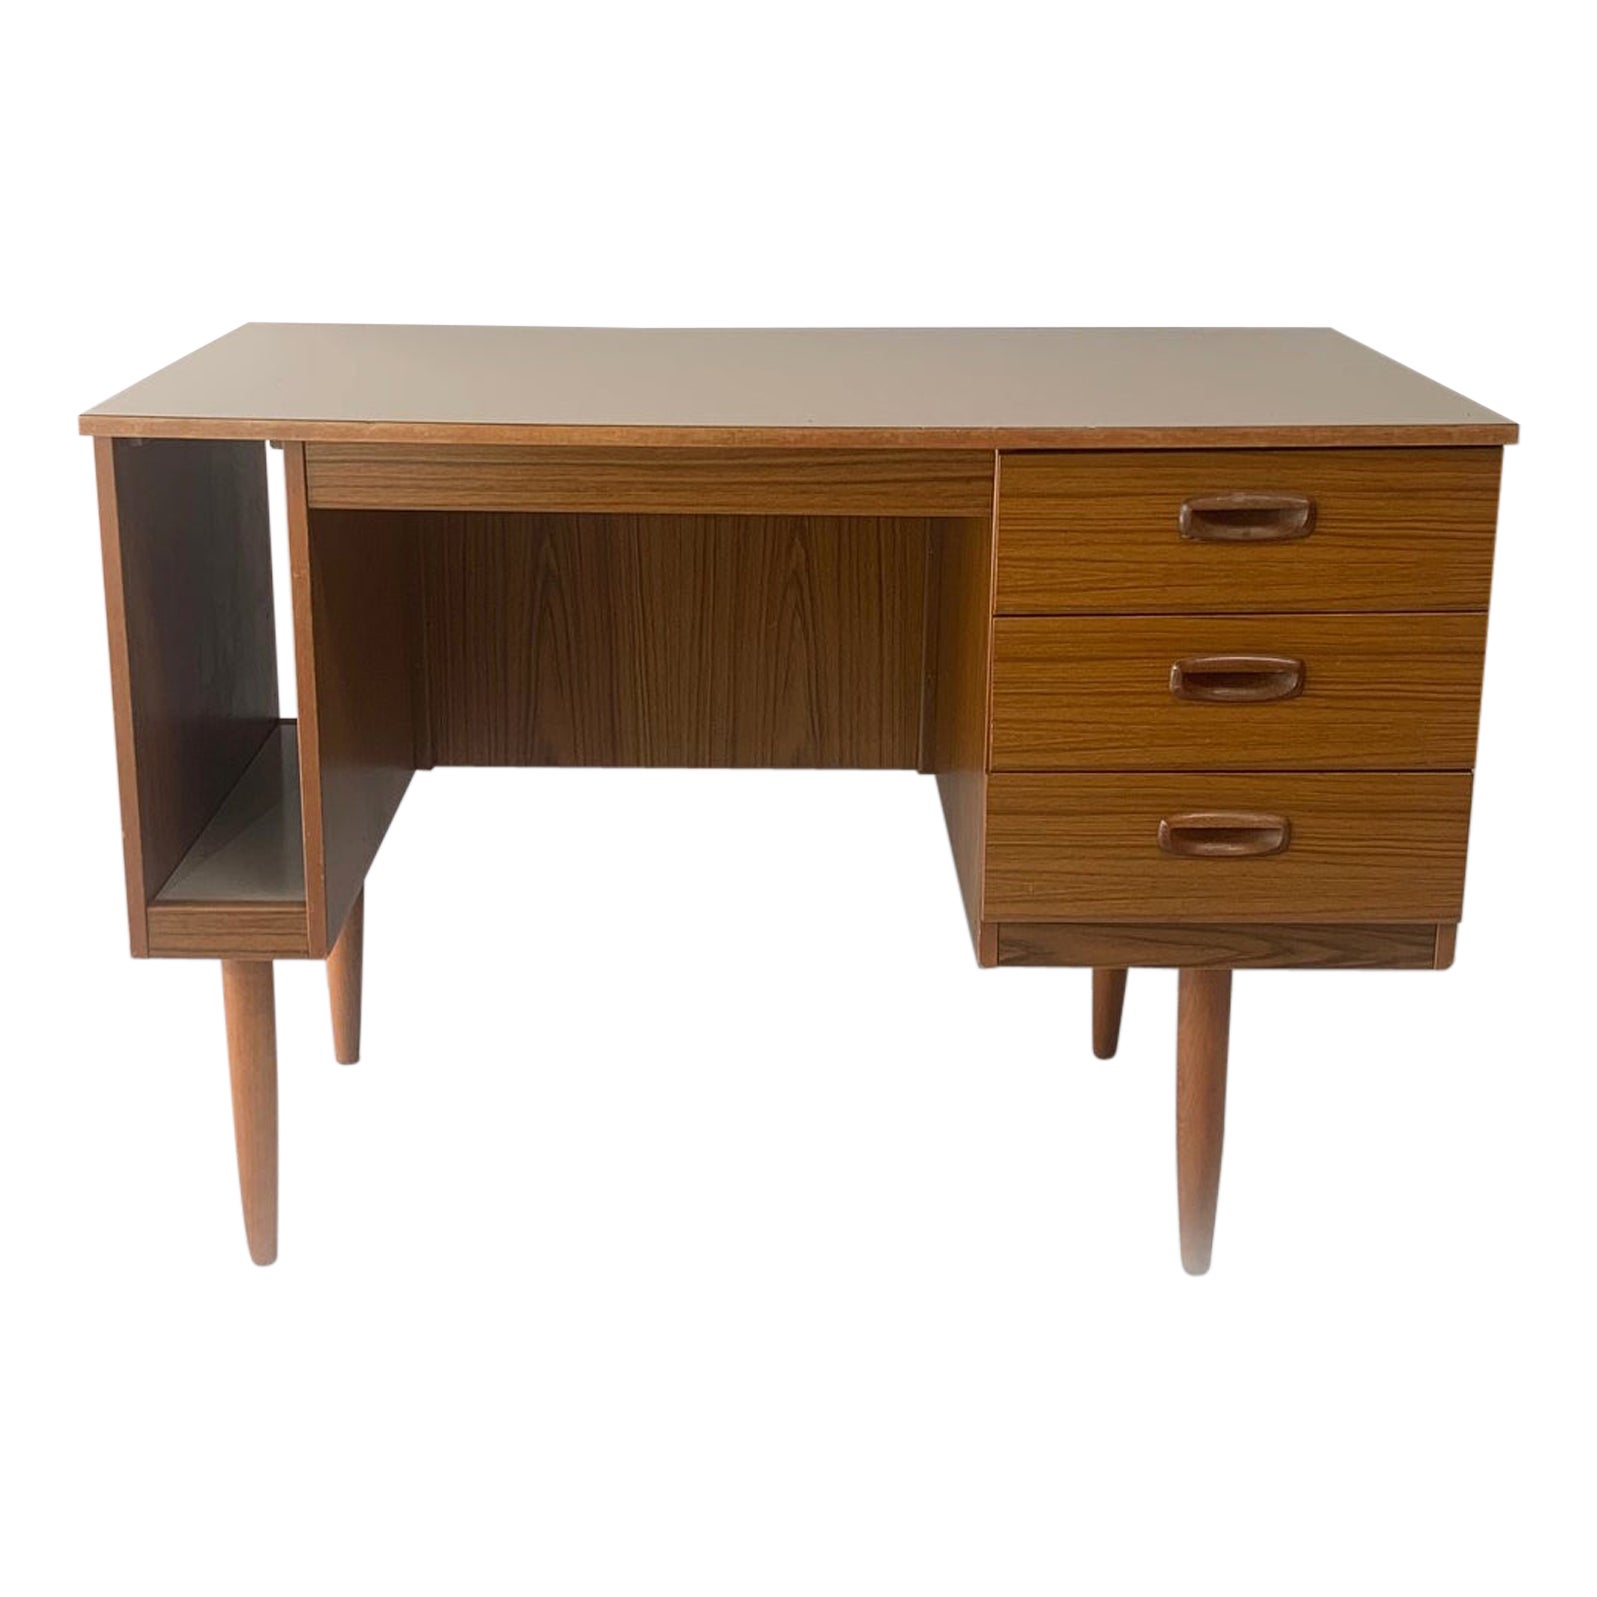 1970’s Mid-Century Modern Desk by Schreiber Furniture